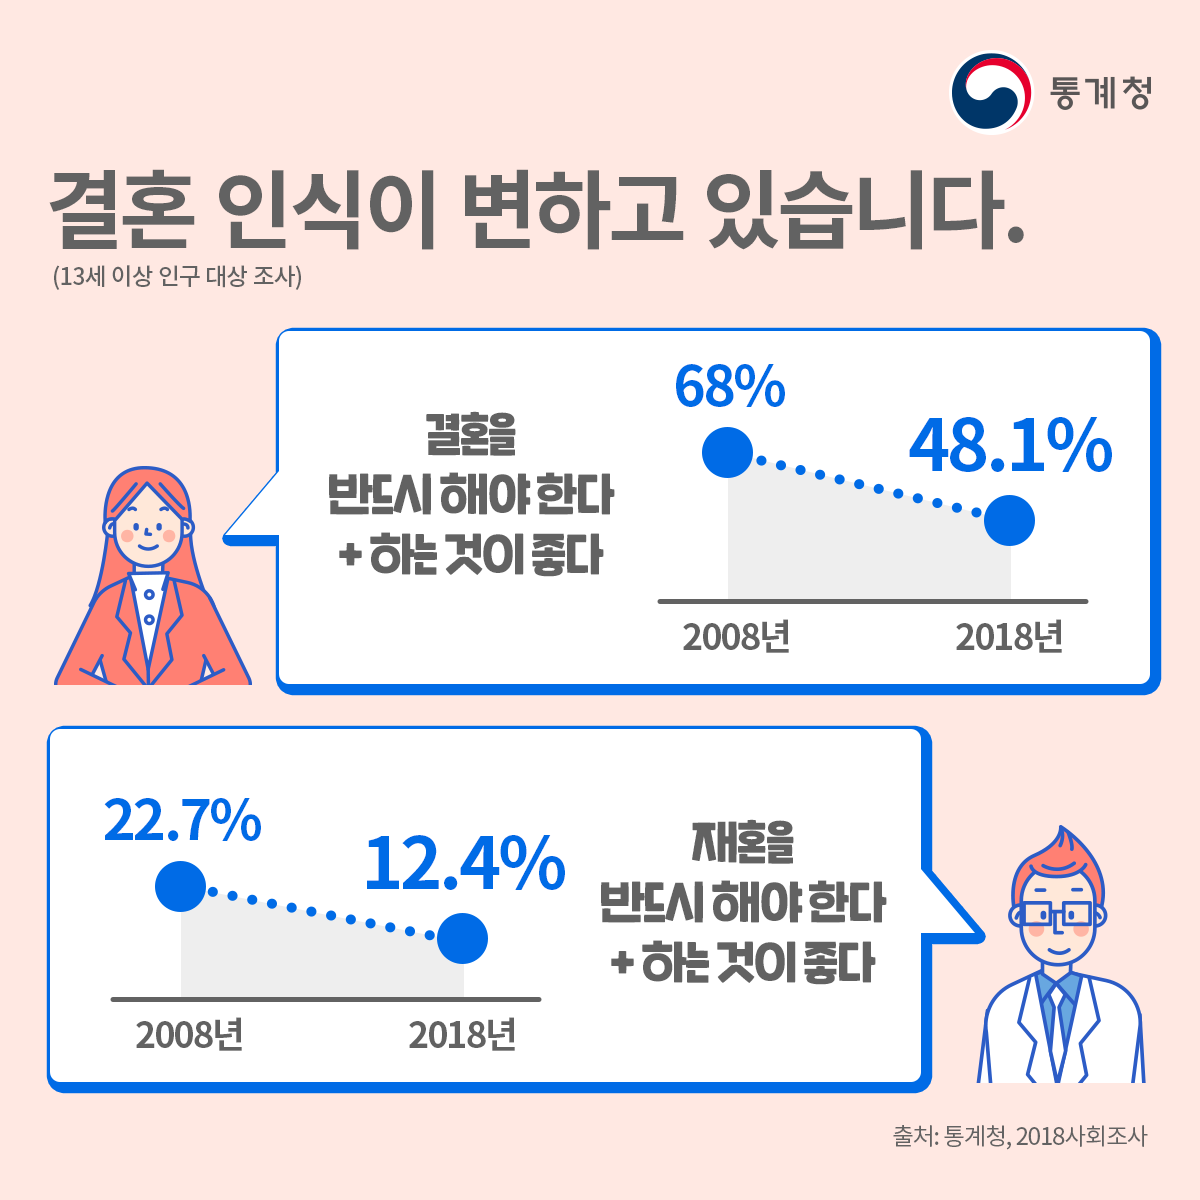 세대 차이를 실감하는 순간 2위는 아이돌.. 1위는? : 네이버 포스트